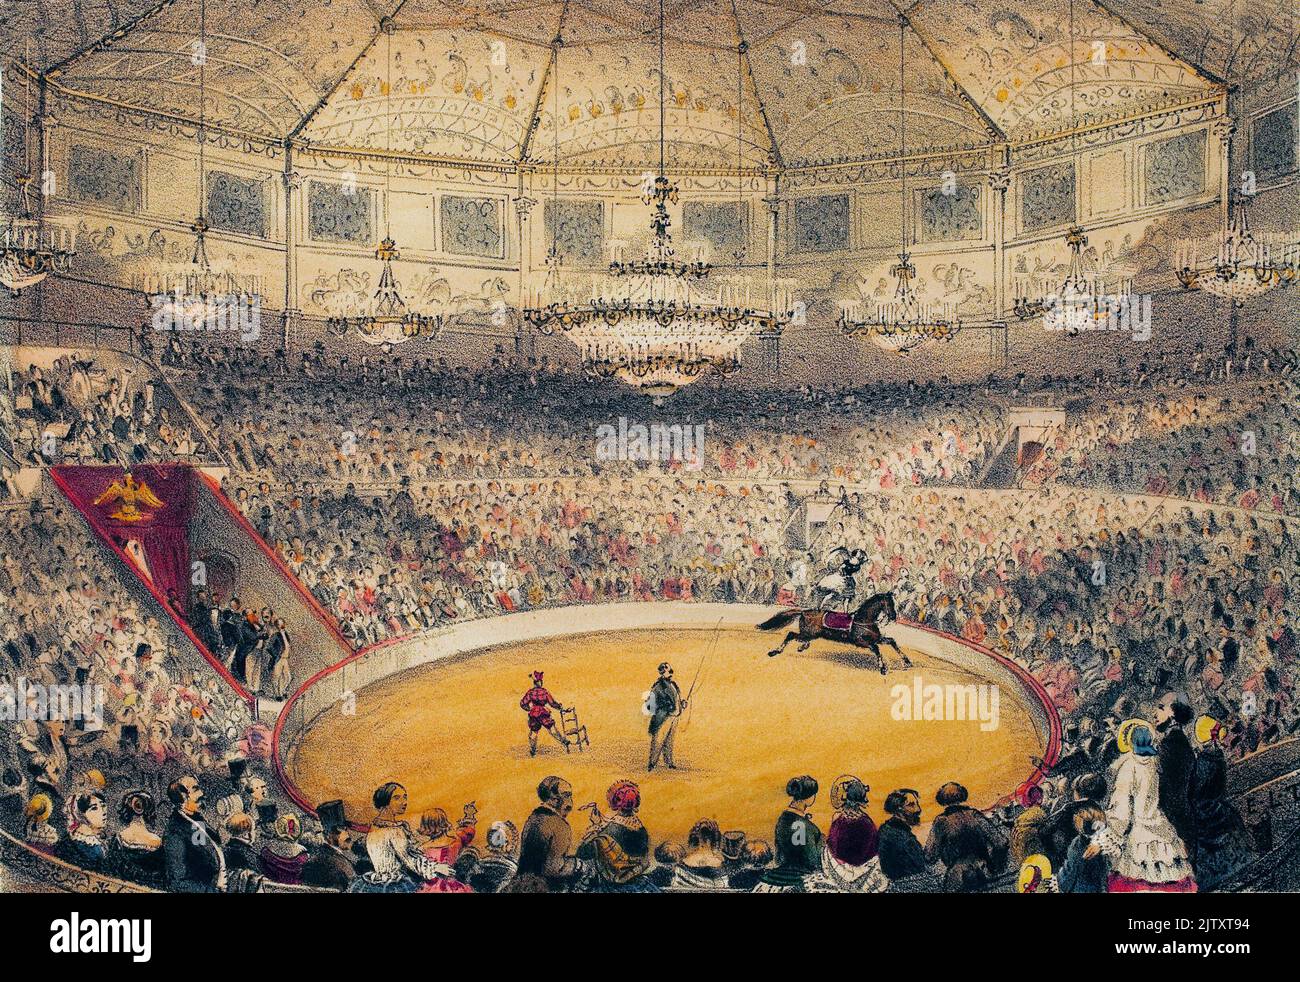 Circo Napoleone (actuel cirque d'hiver, rue Amelot, Parigi). Lithographie aquarellee, Illustration de la Tramblais, in 'Album, souvenirs de Paris', Parigi, 1885. Foto Stock